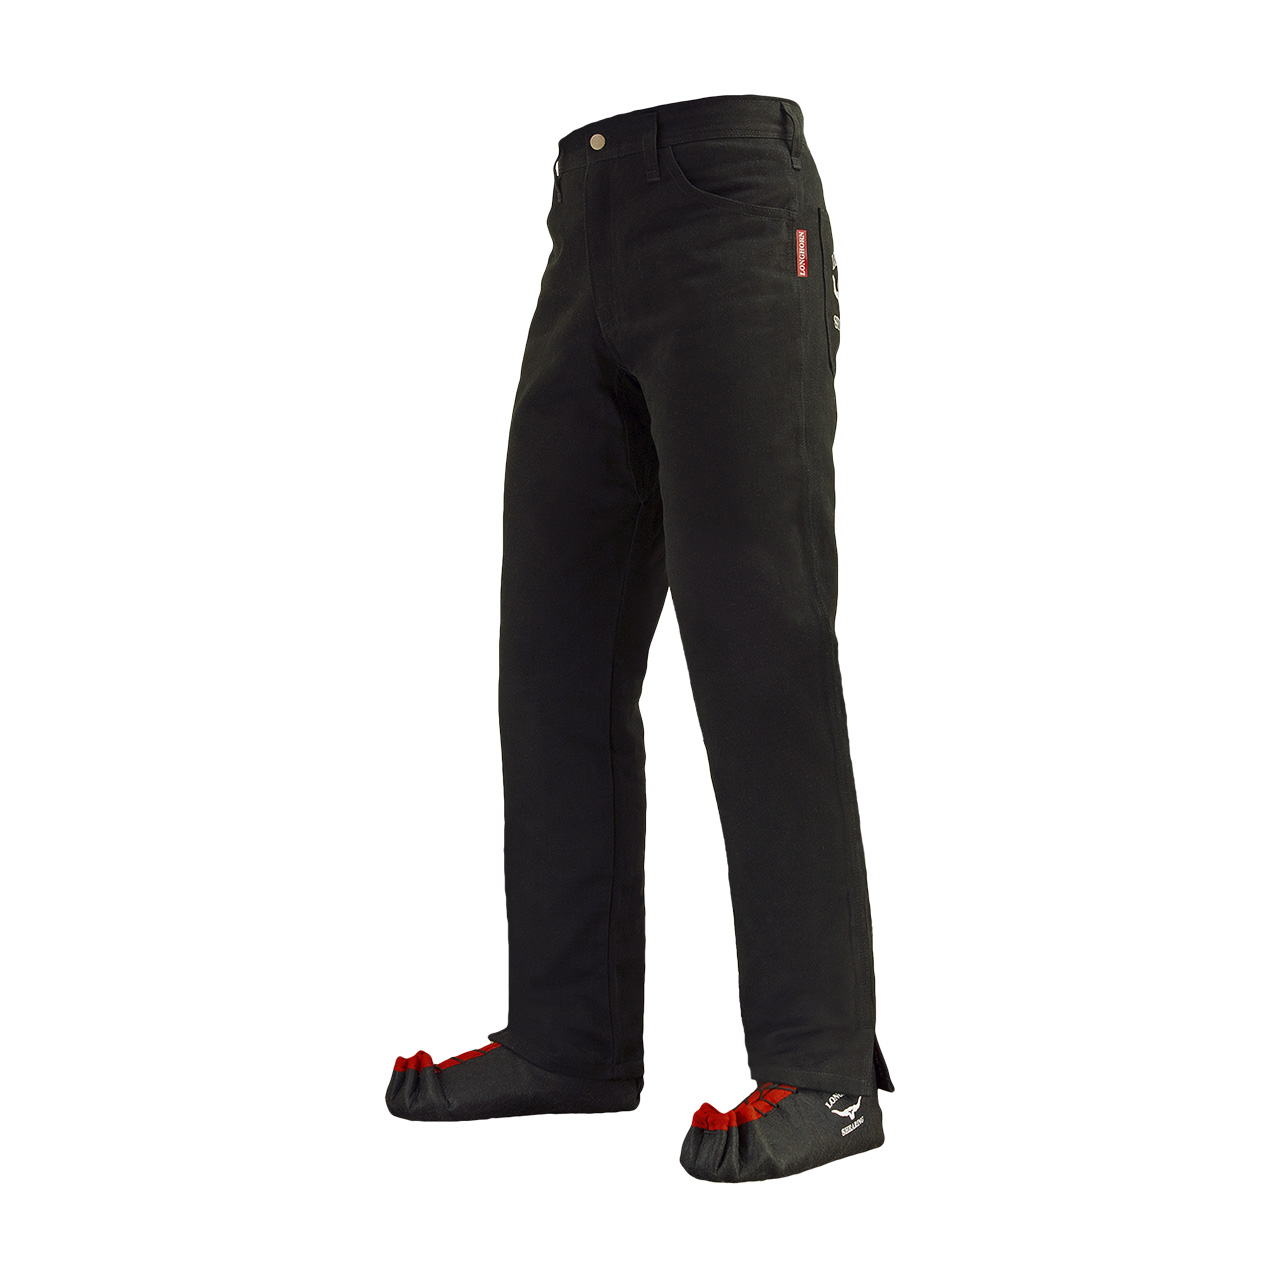 Longhorn™ kalhoty pro střihače ovcí s 2 předními kapsami velikost Short 40/28 8S